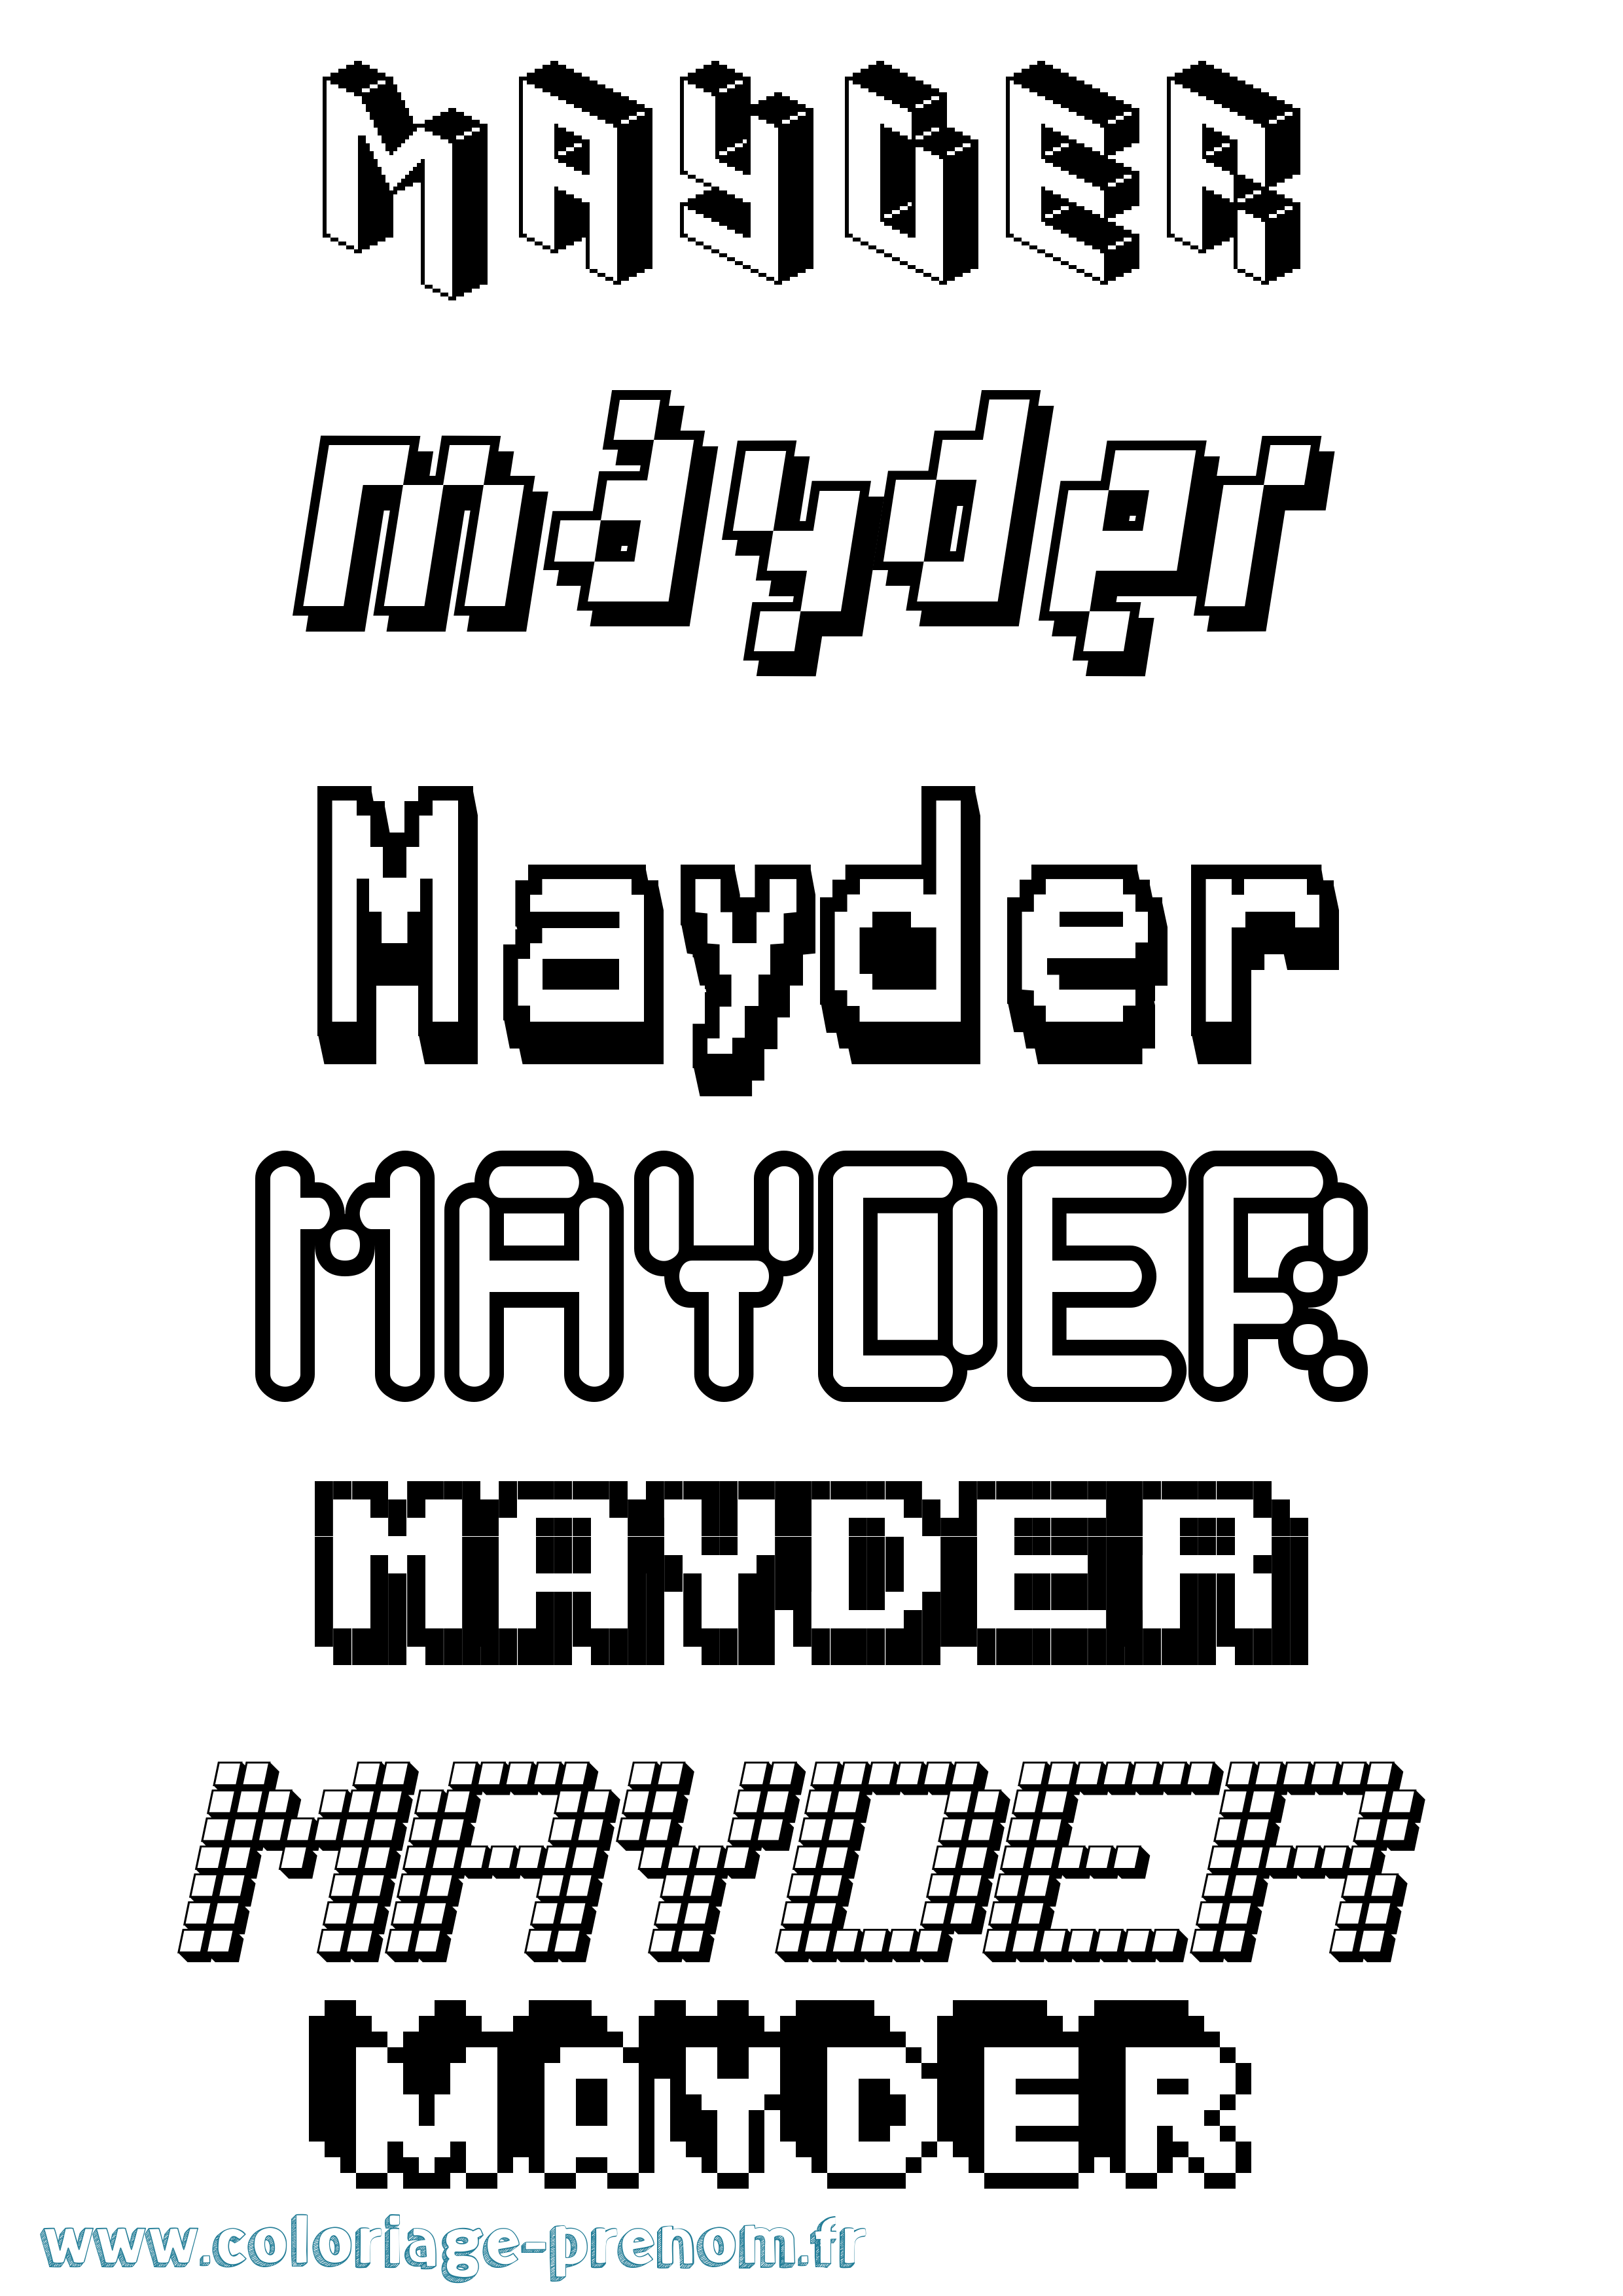 Coloriage prénom Mayder Pixel